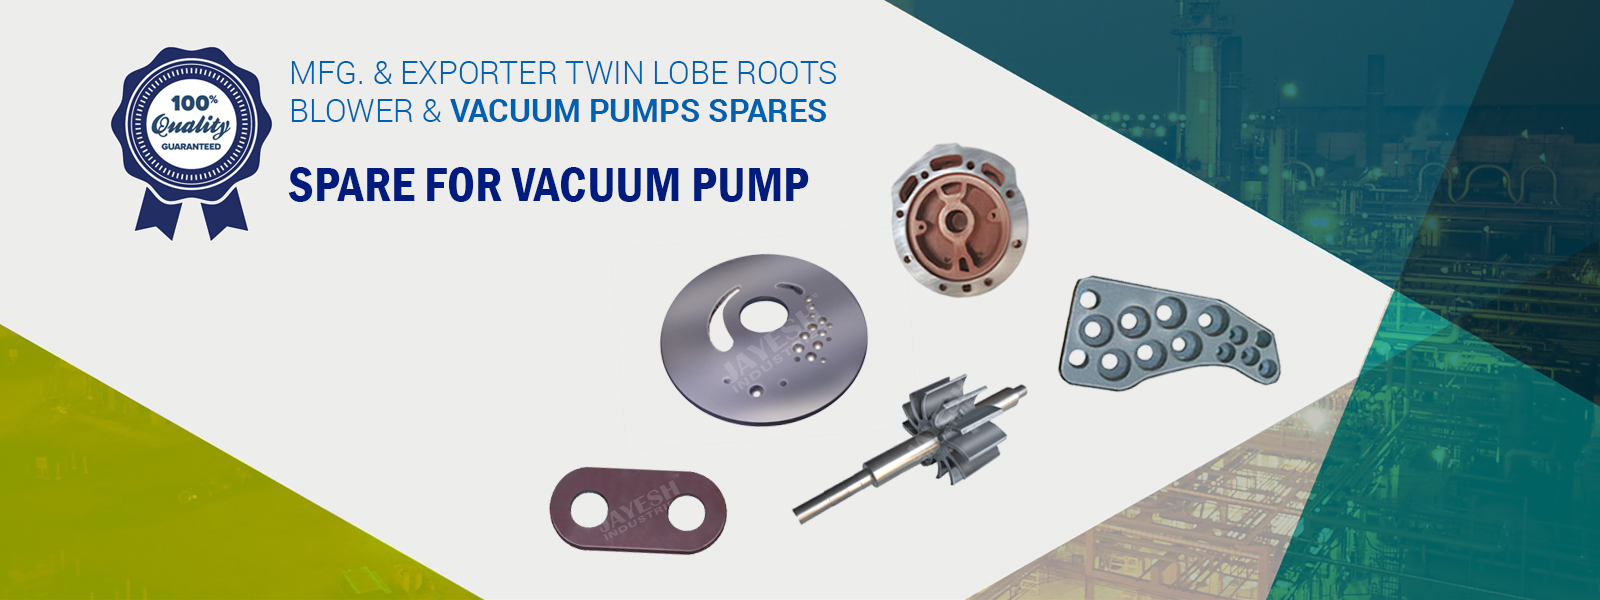 Spare for vacuum pump manufacturer